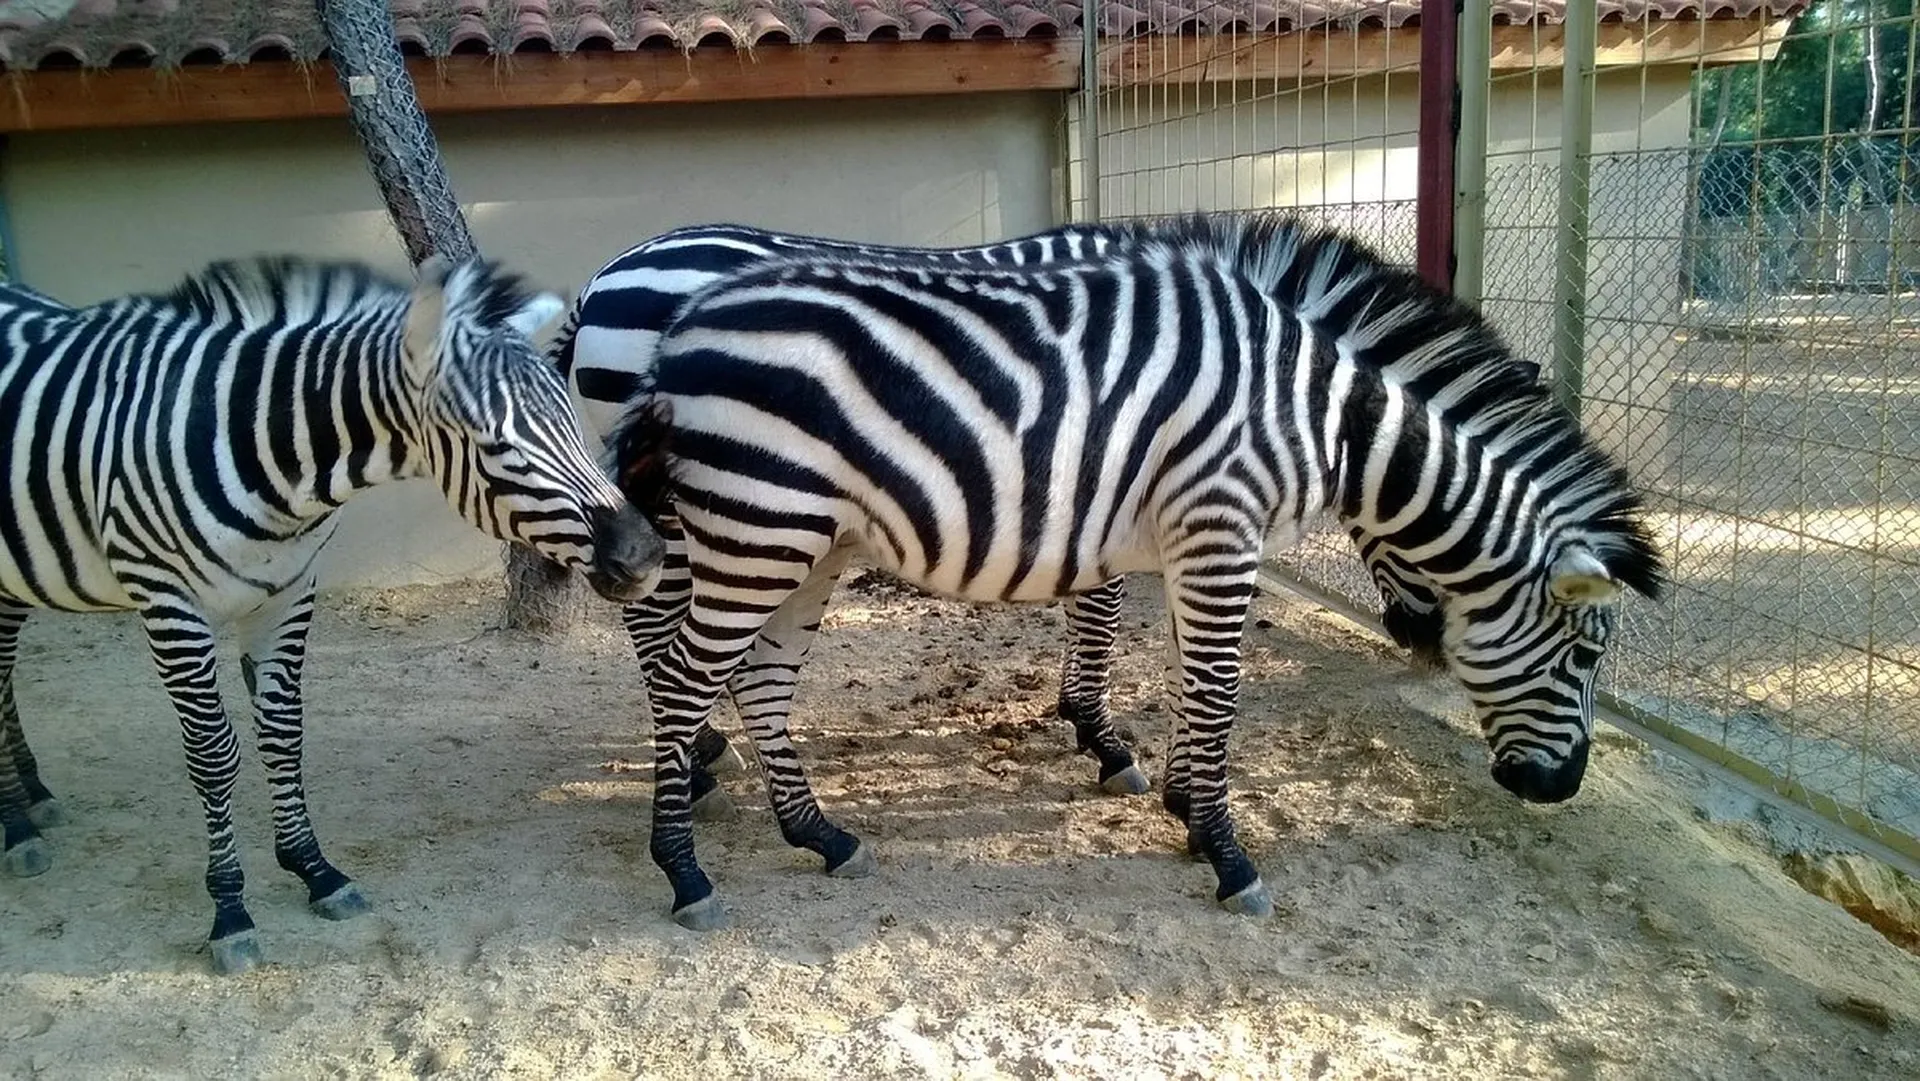 Antalya Zoo